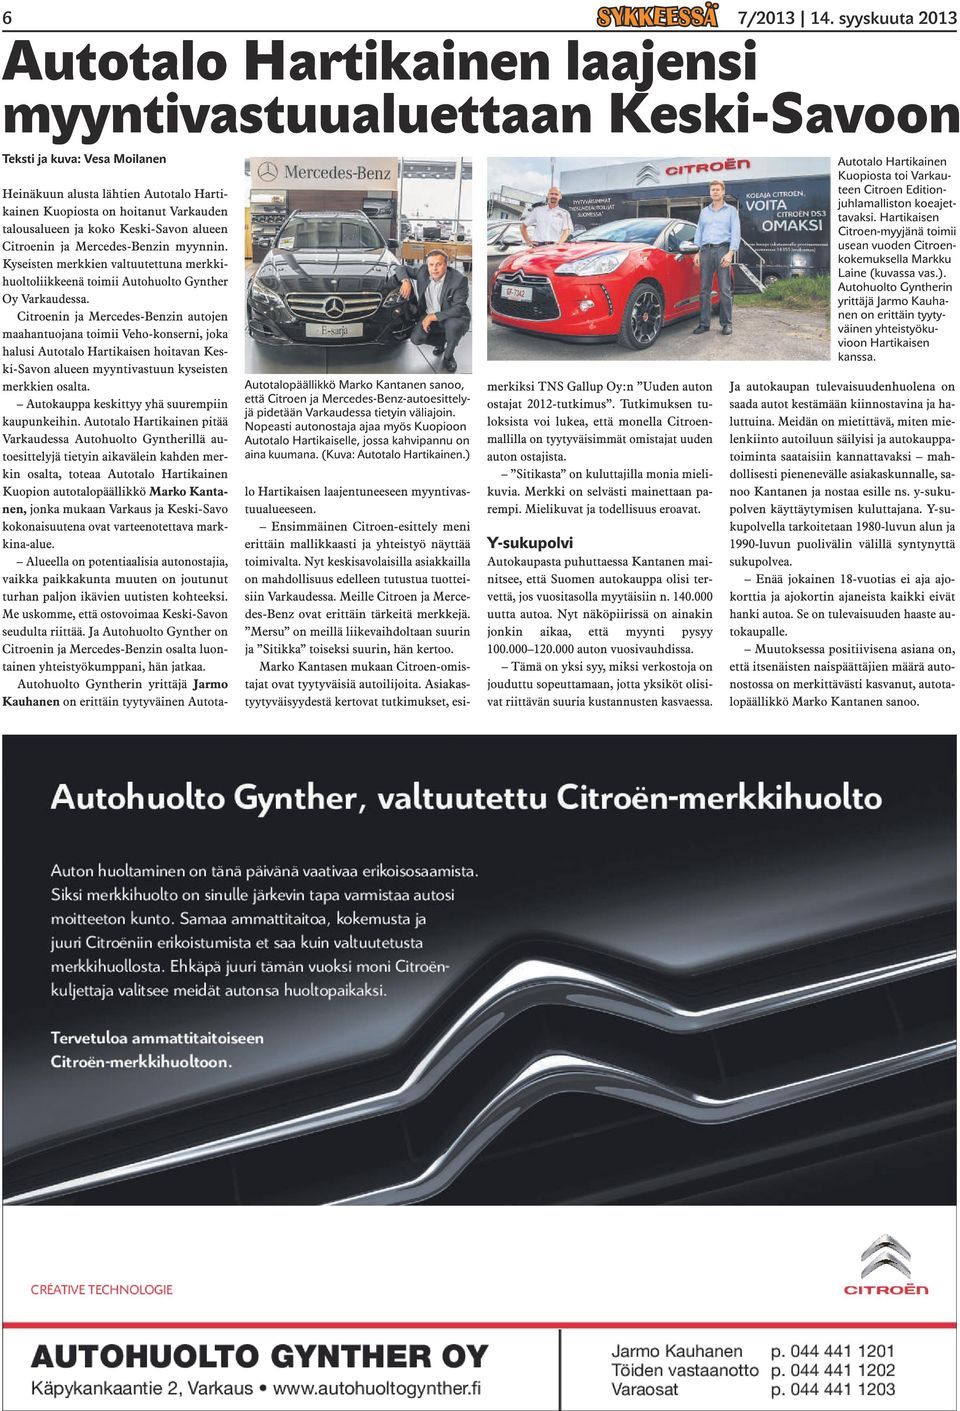 Citroenin ja Mercedes-Benzin autojen maahantuojana toimii Veho-konserni, joka halusi Autotalo Hartikaisen hoitavan Keski-Savon alueen myyntivastuun kyseisten merkkien osalta.